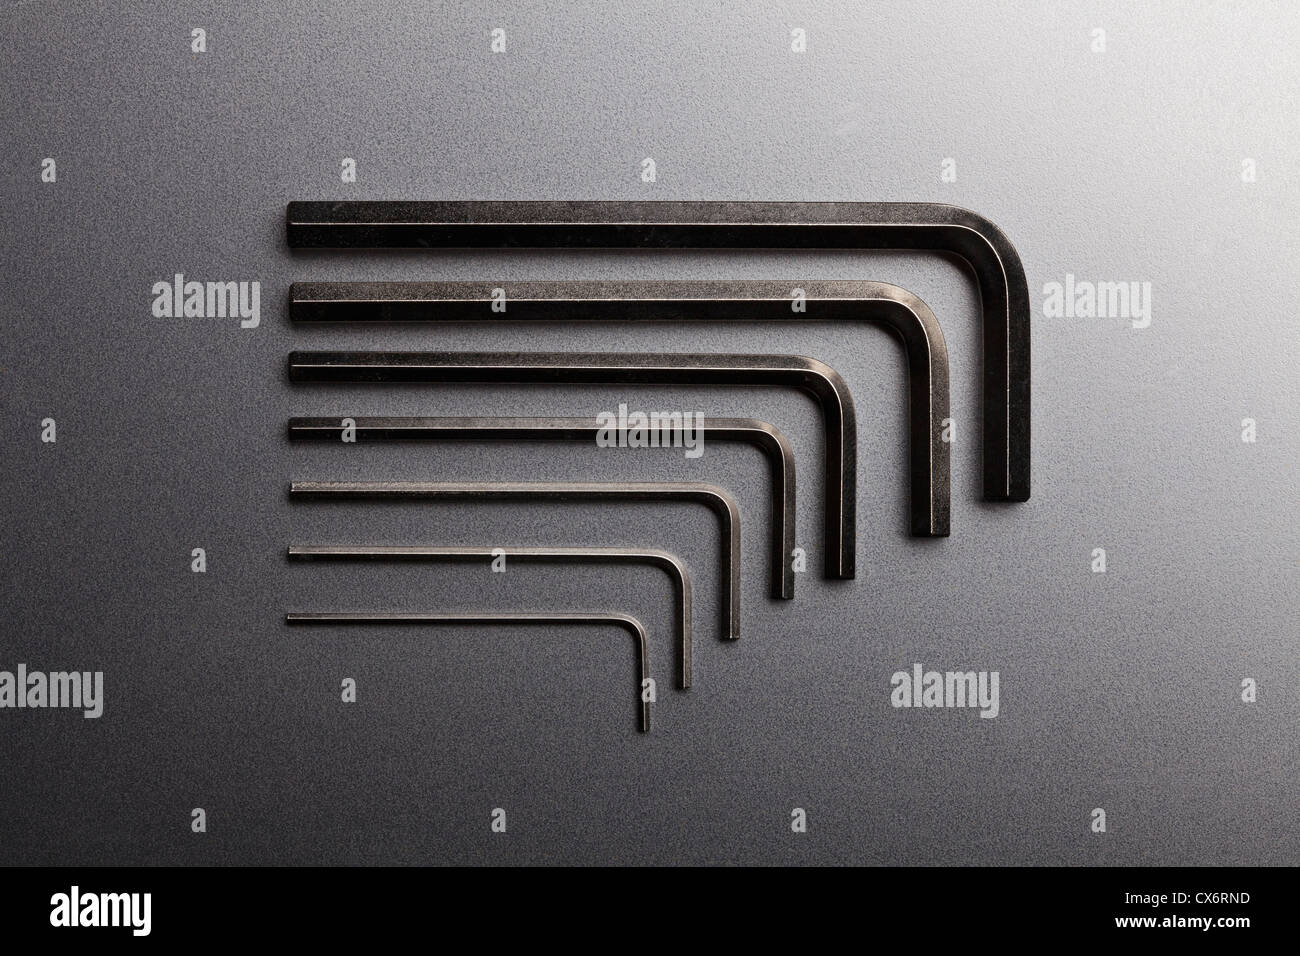 Varie dimensioni di chiavi a brugola in una fila ordinata Foto Stock